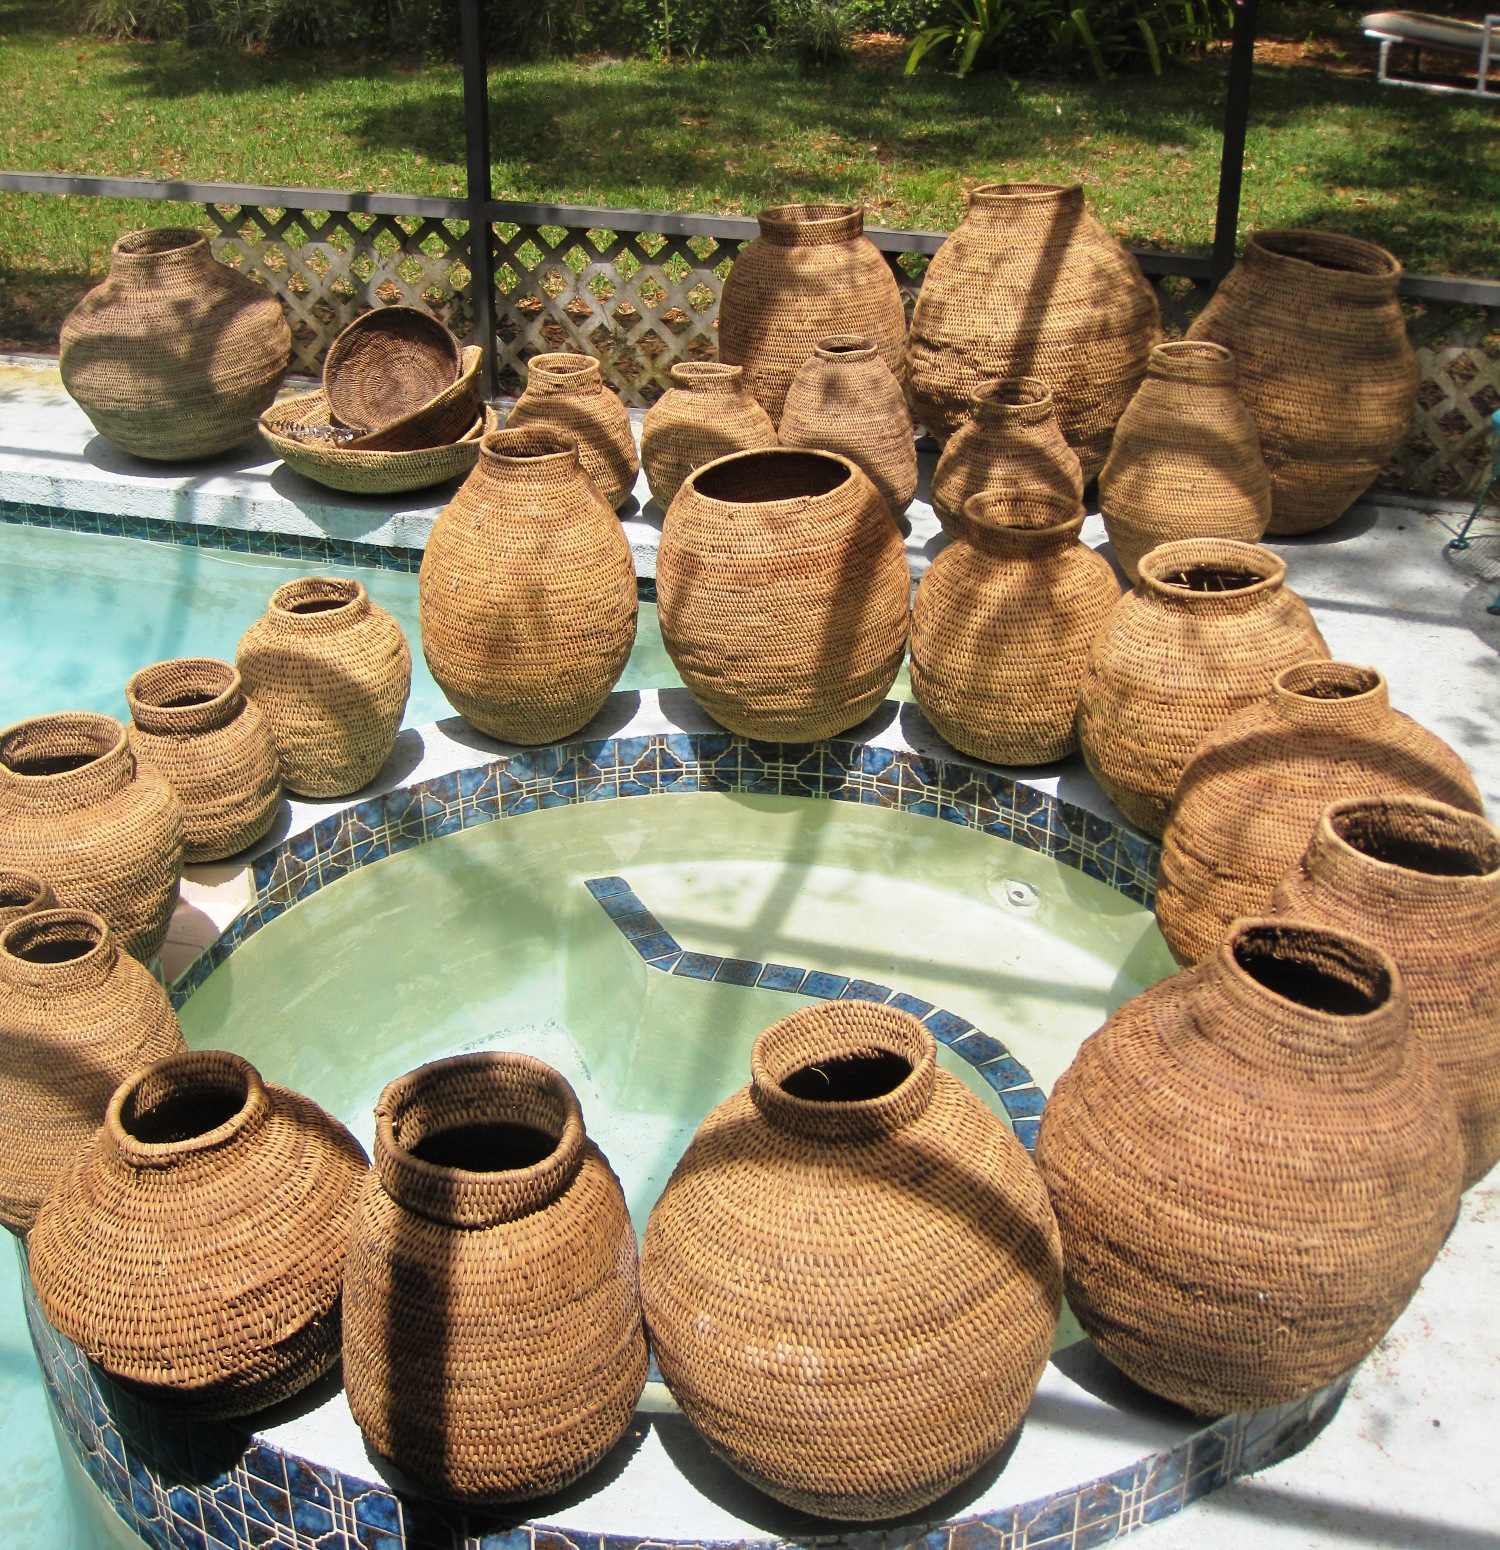 Buhera Tall baskets - Size: 19" - 21"